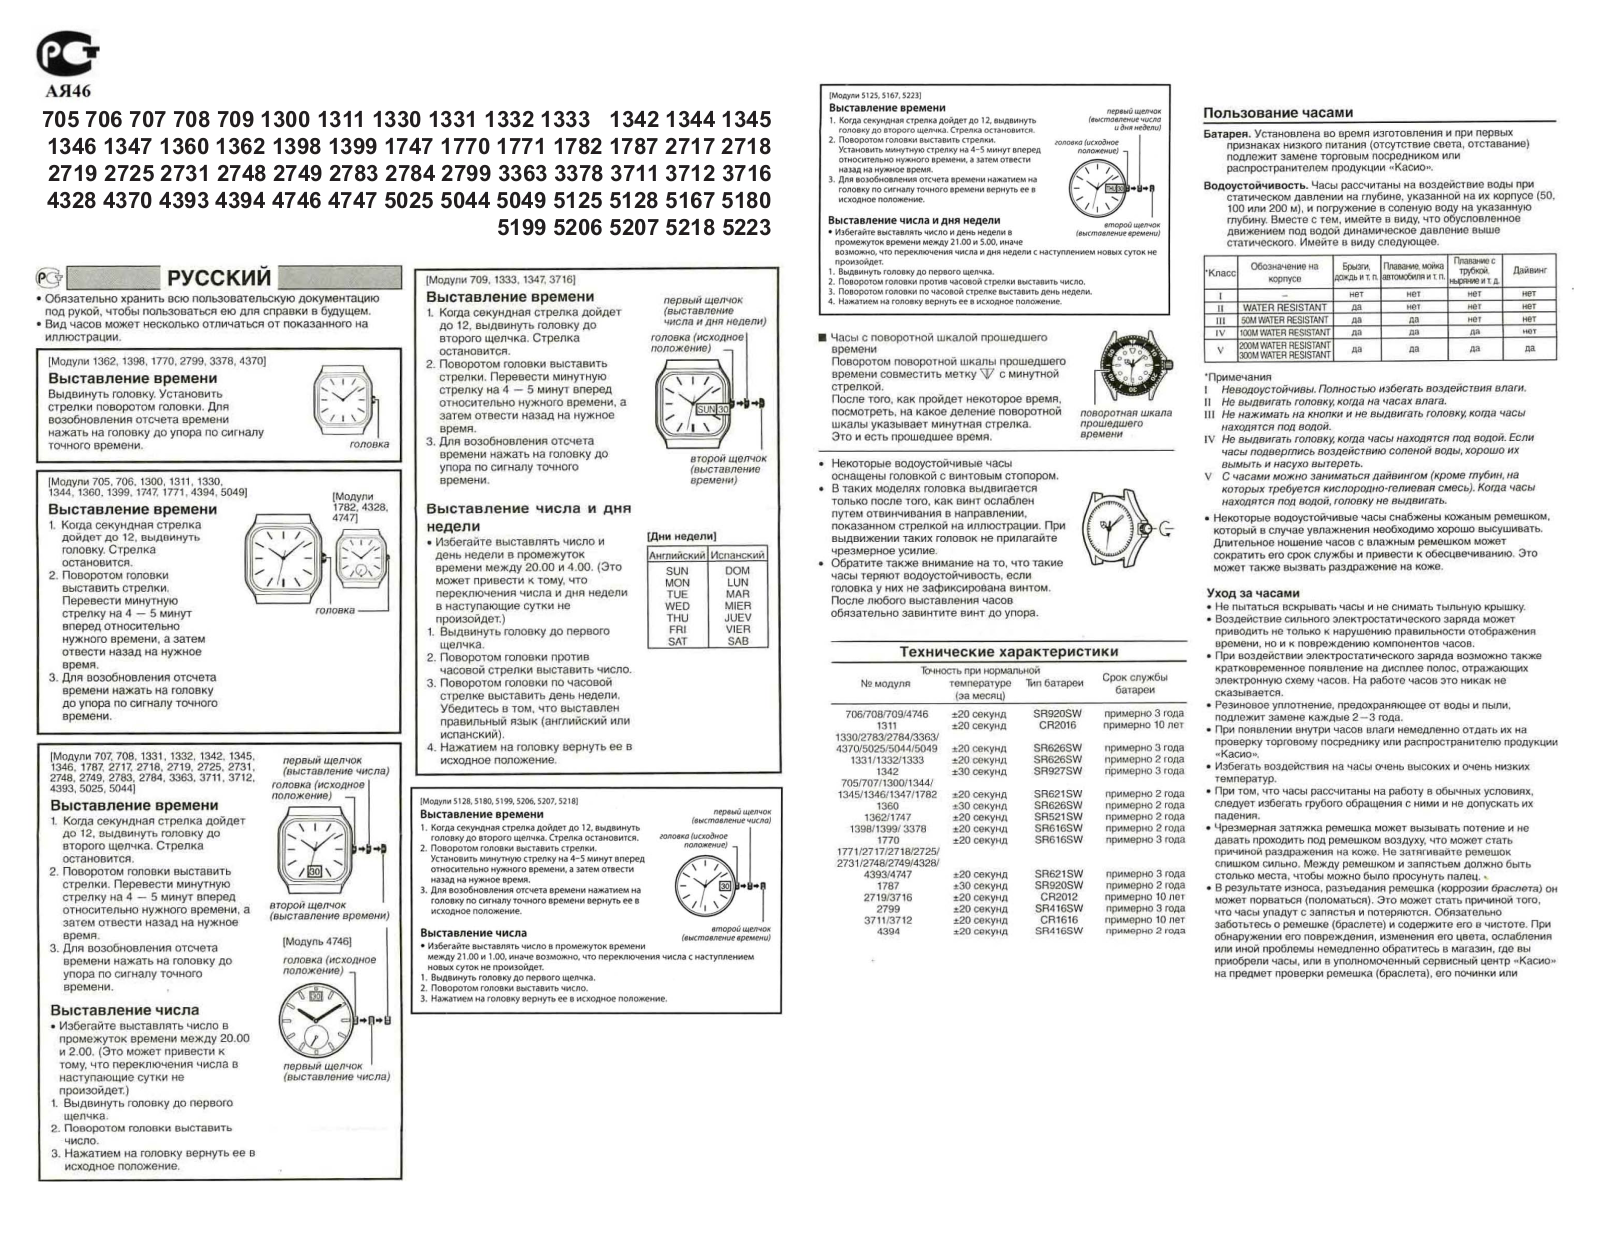 Casio 2718 User Manual